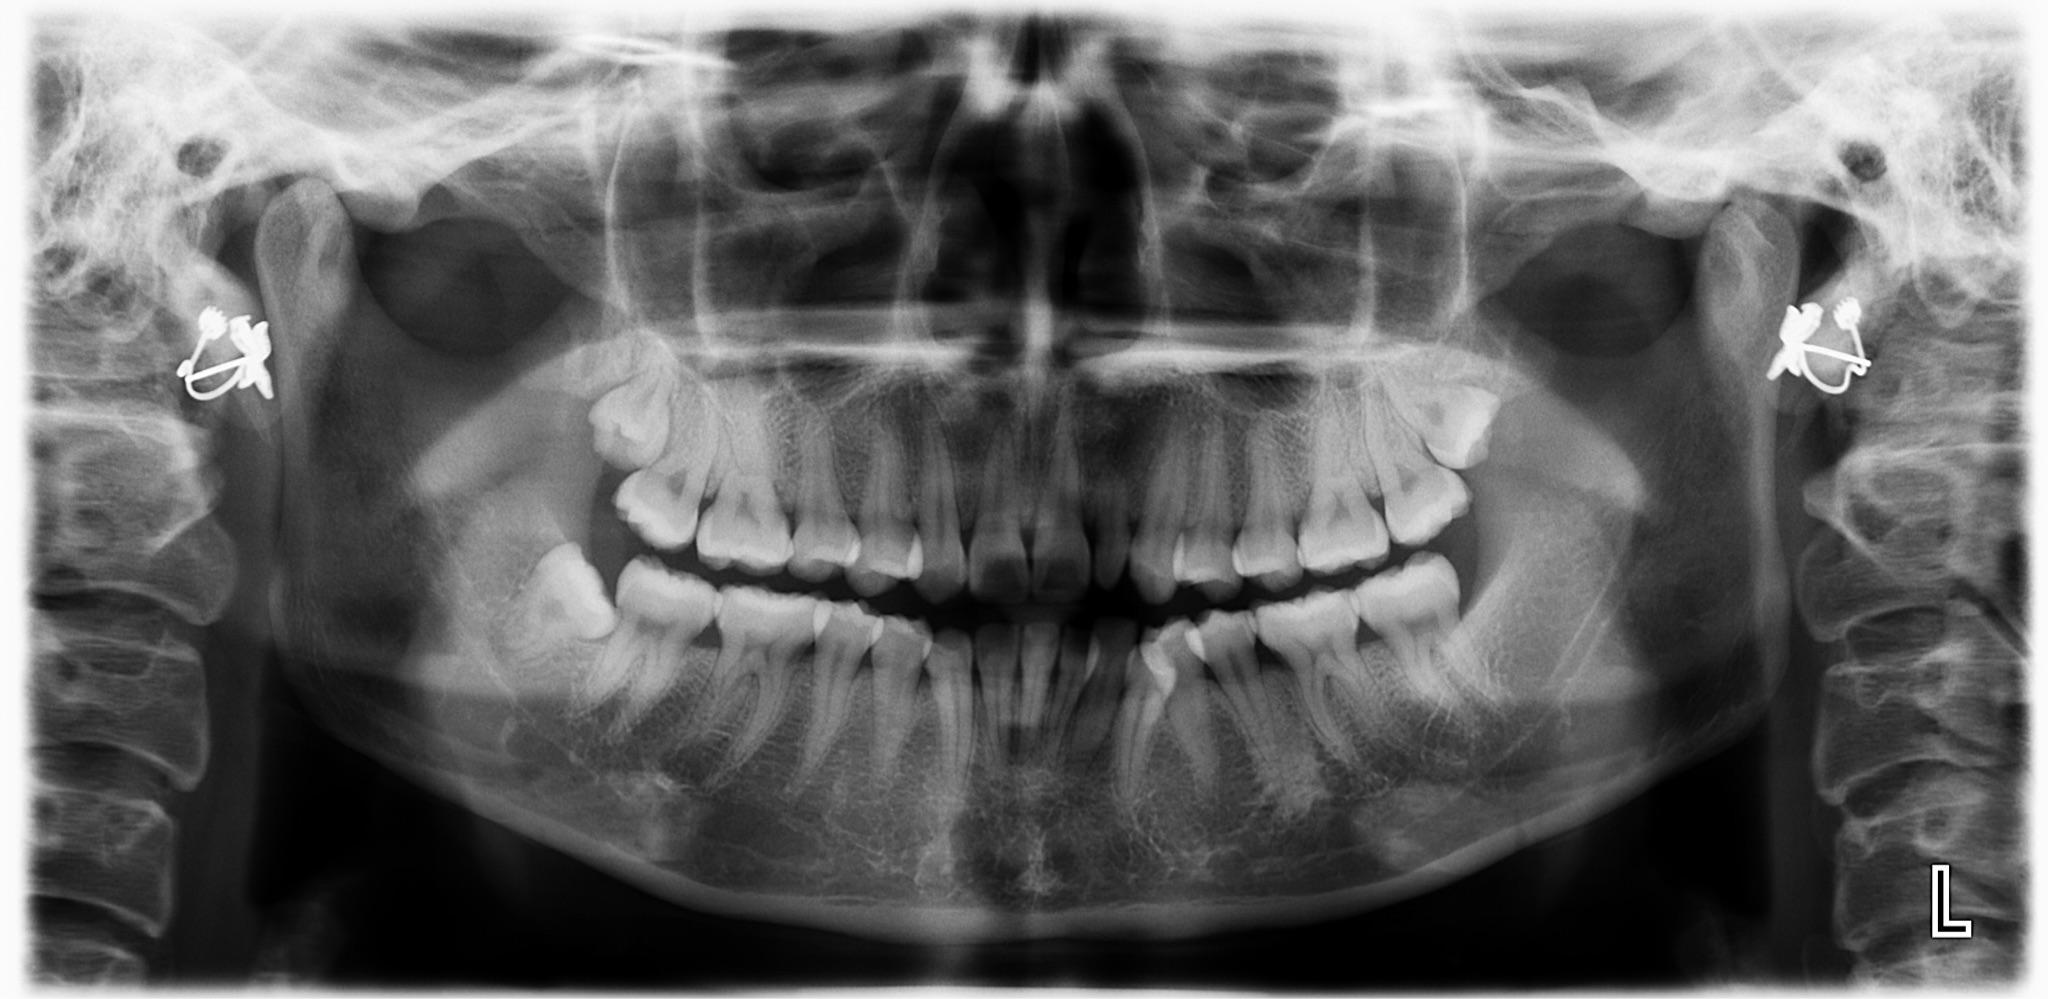 去两家牙科医院咨询箍牙:一家医生说要上下箍